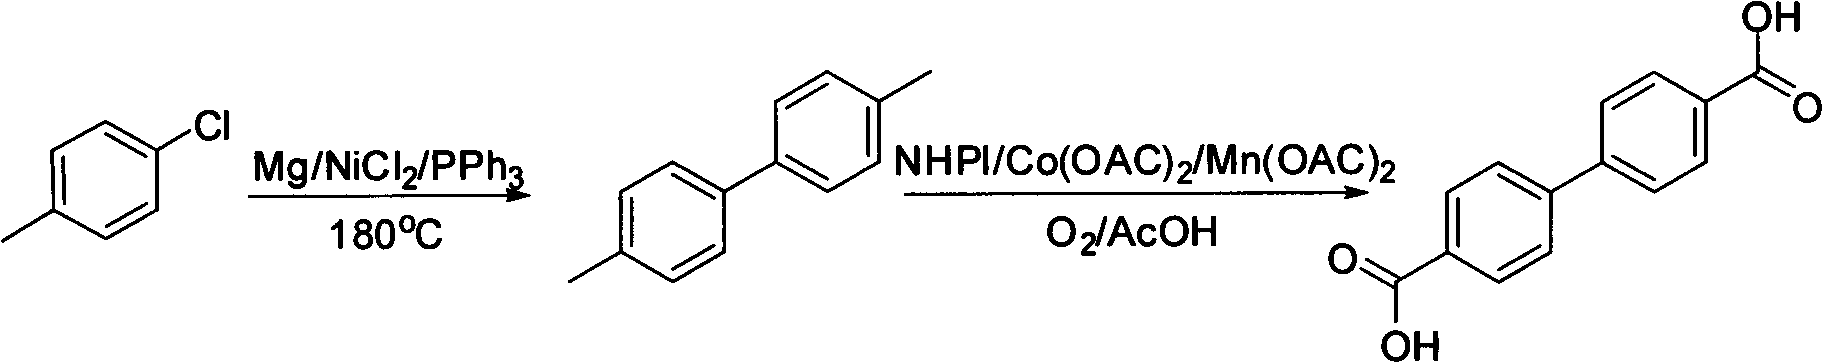 Method for synthesizing biphenyl 4,4'-dicarboxylic acid from p-chlorotoluene